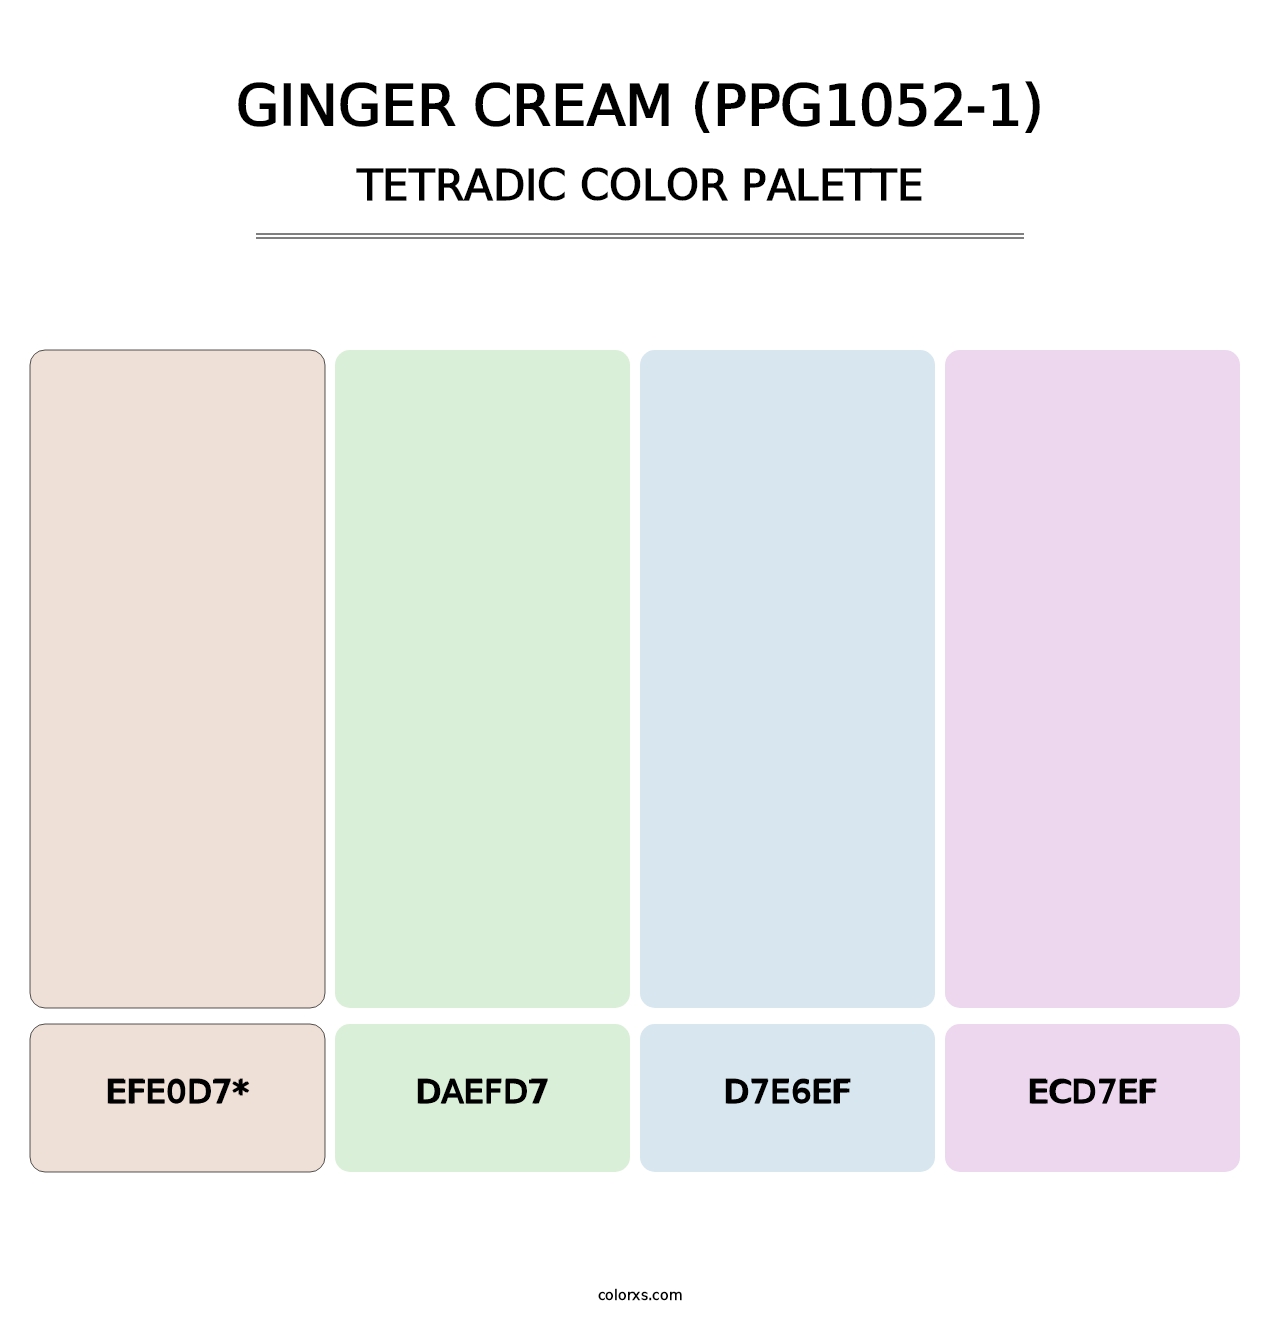 Ginger Cream (PPG1052-1) - Tetradic Color Palette